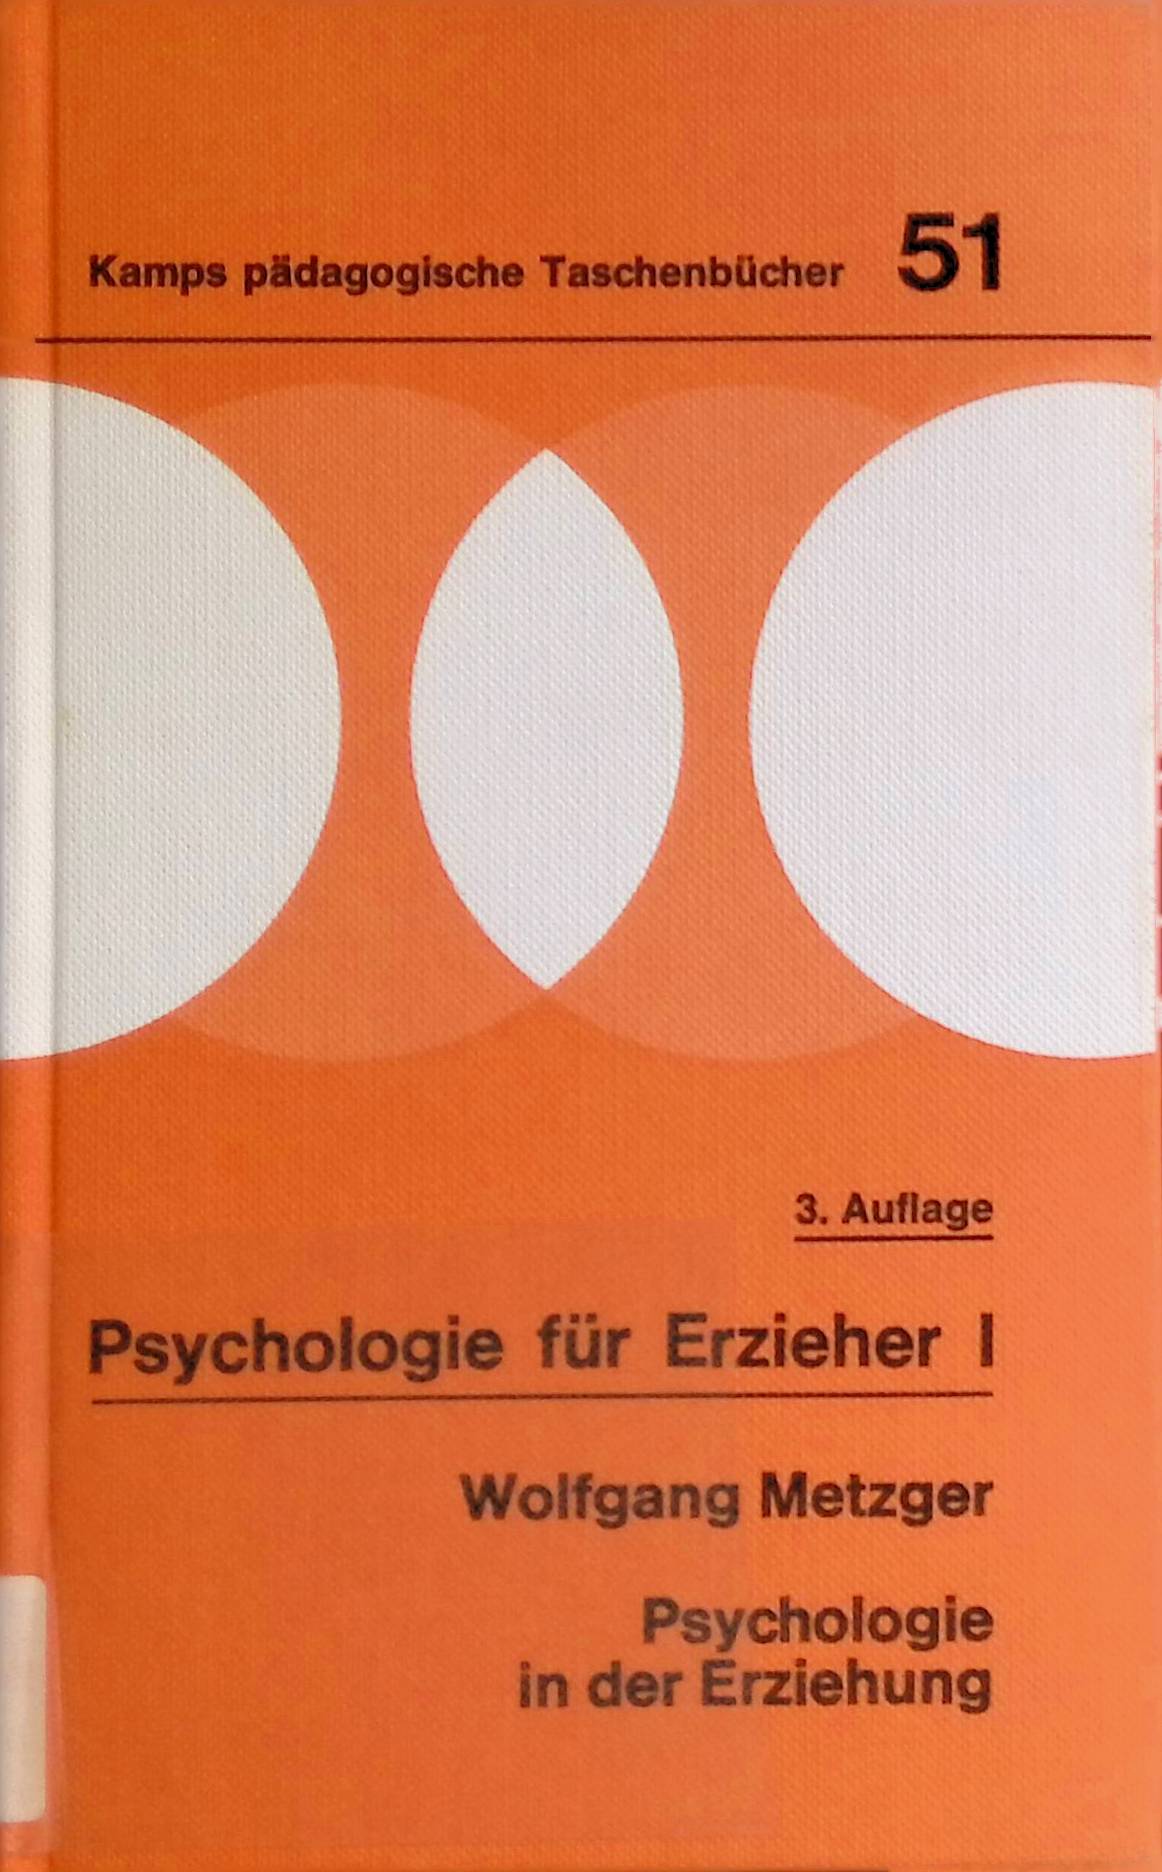 Psychologie in der Erziehung. Kamps pädagogische Taschenbücher ; Bd. 51 : Prakt. Pädagogik; Psychologie für Erzieher ; 1 - Metzger, Wolfgang